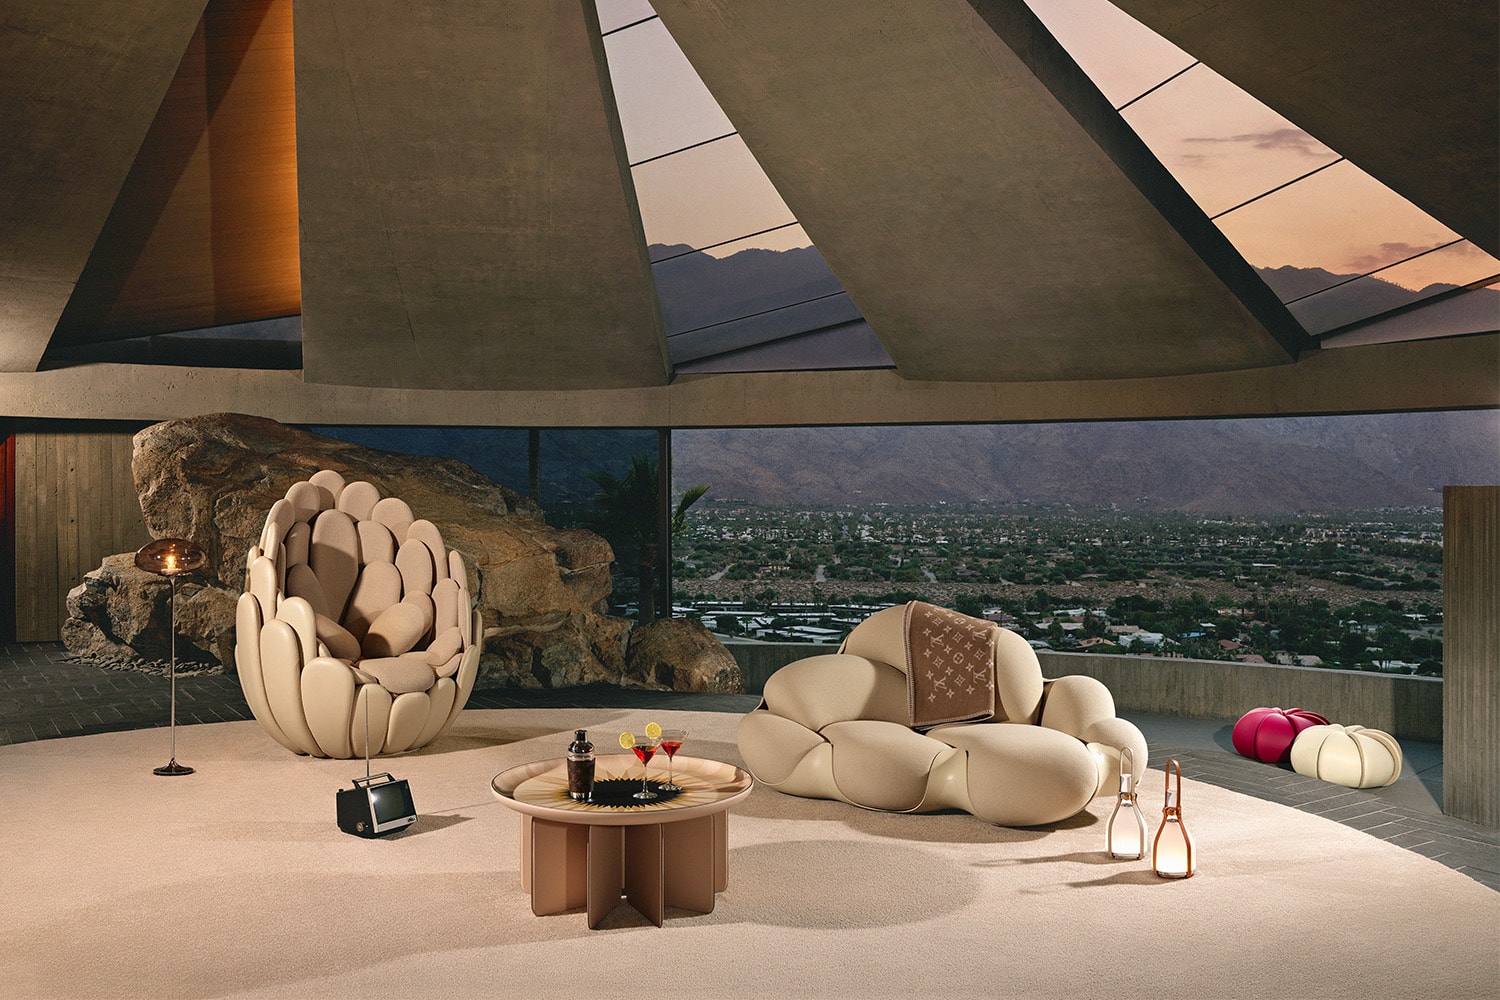 Louis Vuitton 全新 Objets Nomades 生活藝術家具系列正式登陸米蘭設計週